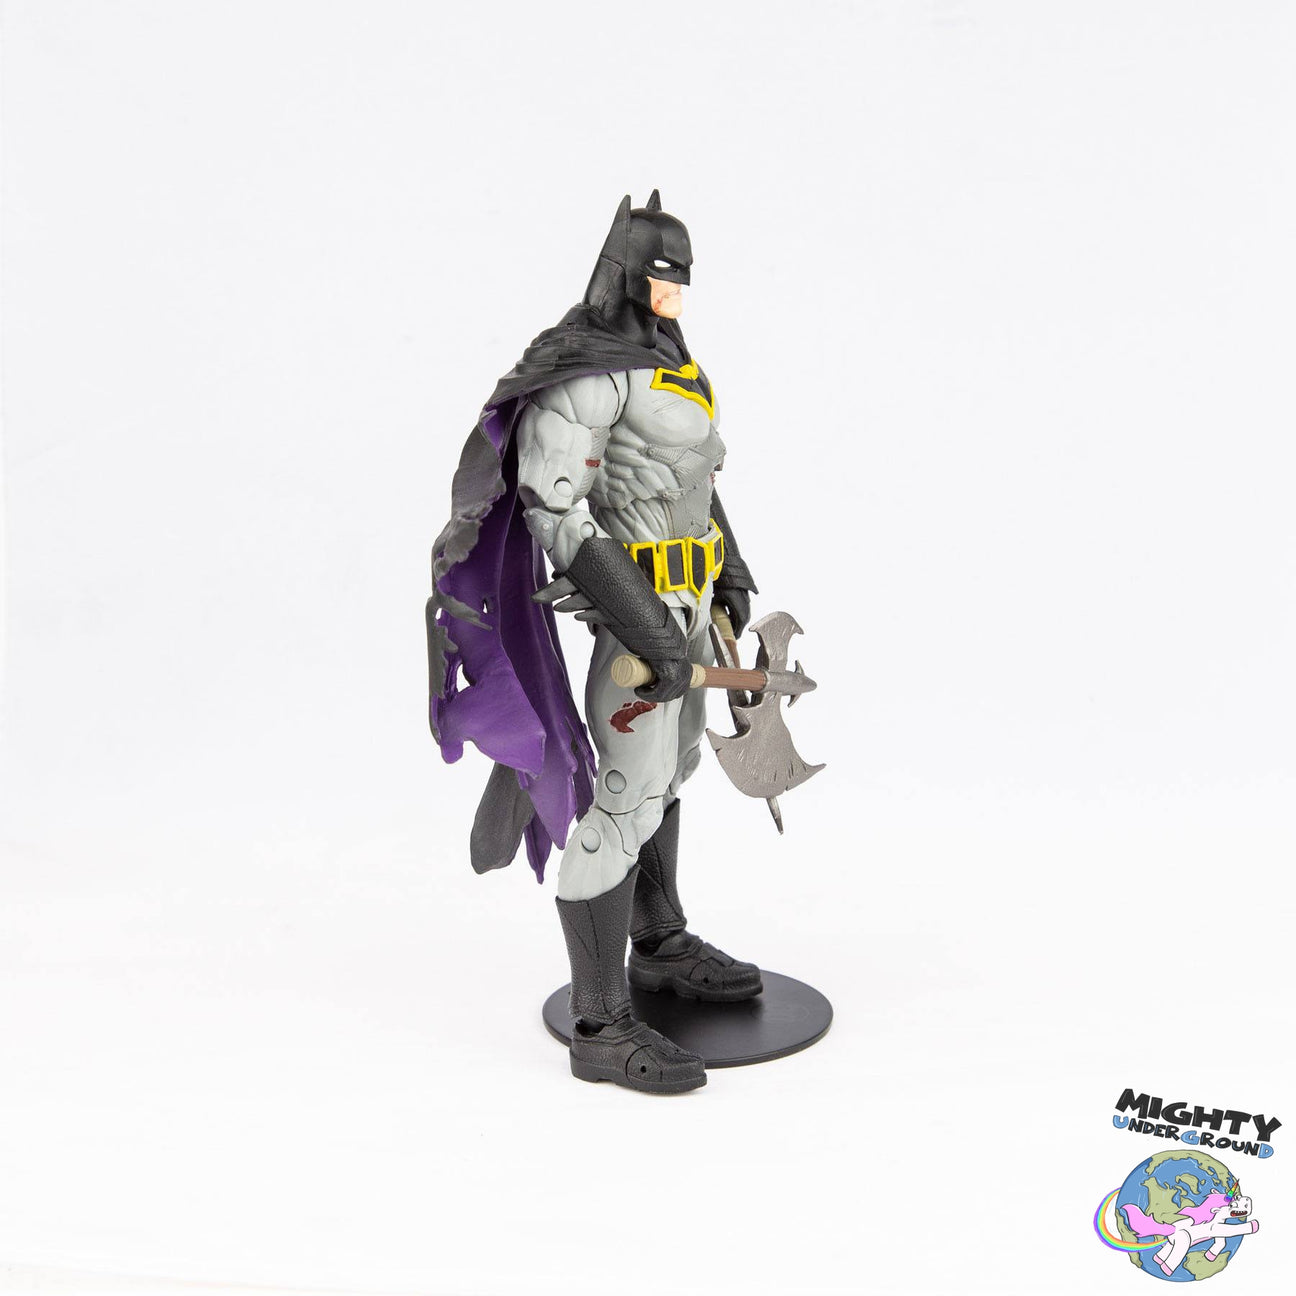 DC Multiverse: Batman with Battle Damage (Dark Nights: Metal) VORBESTELLUNG!-Actionfiguren-McFarlane Toys-Mighty Underground